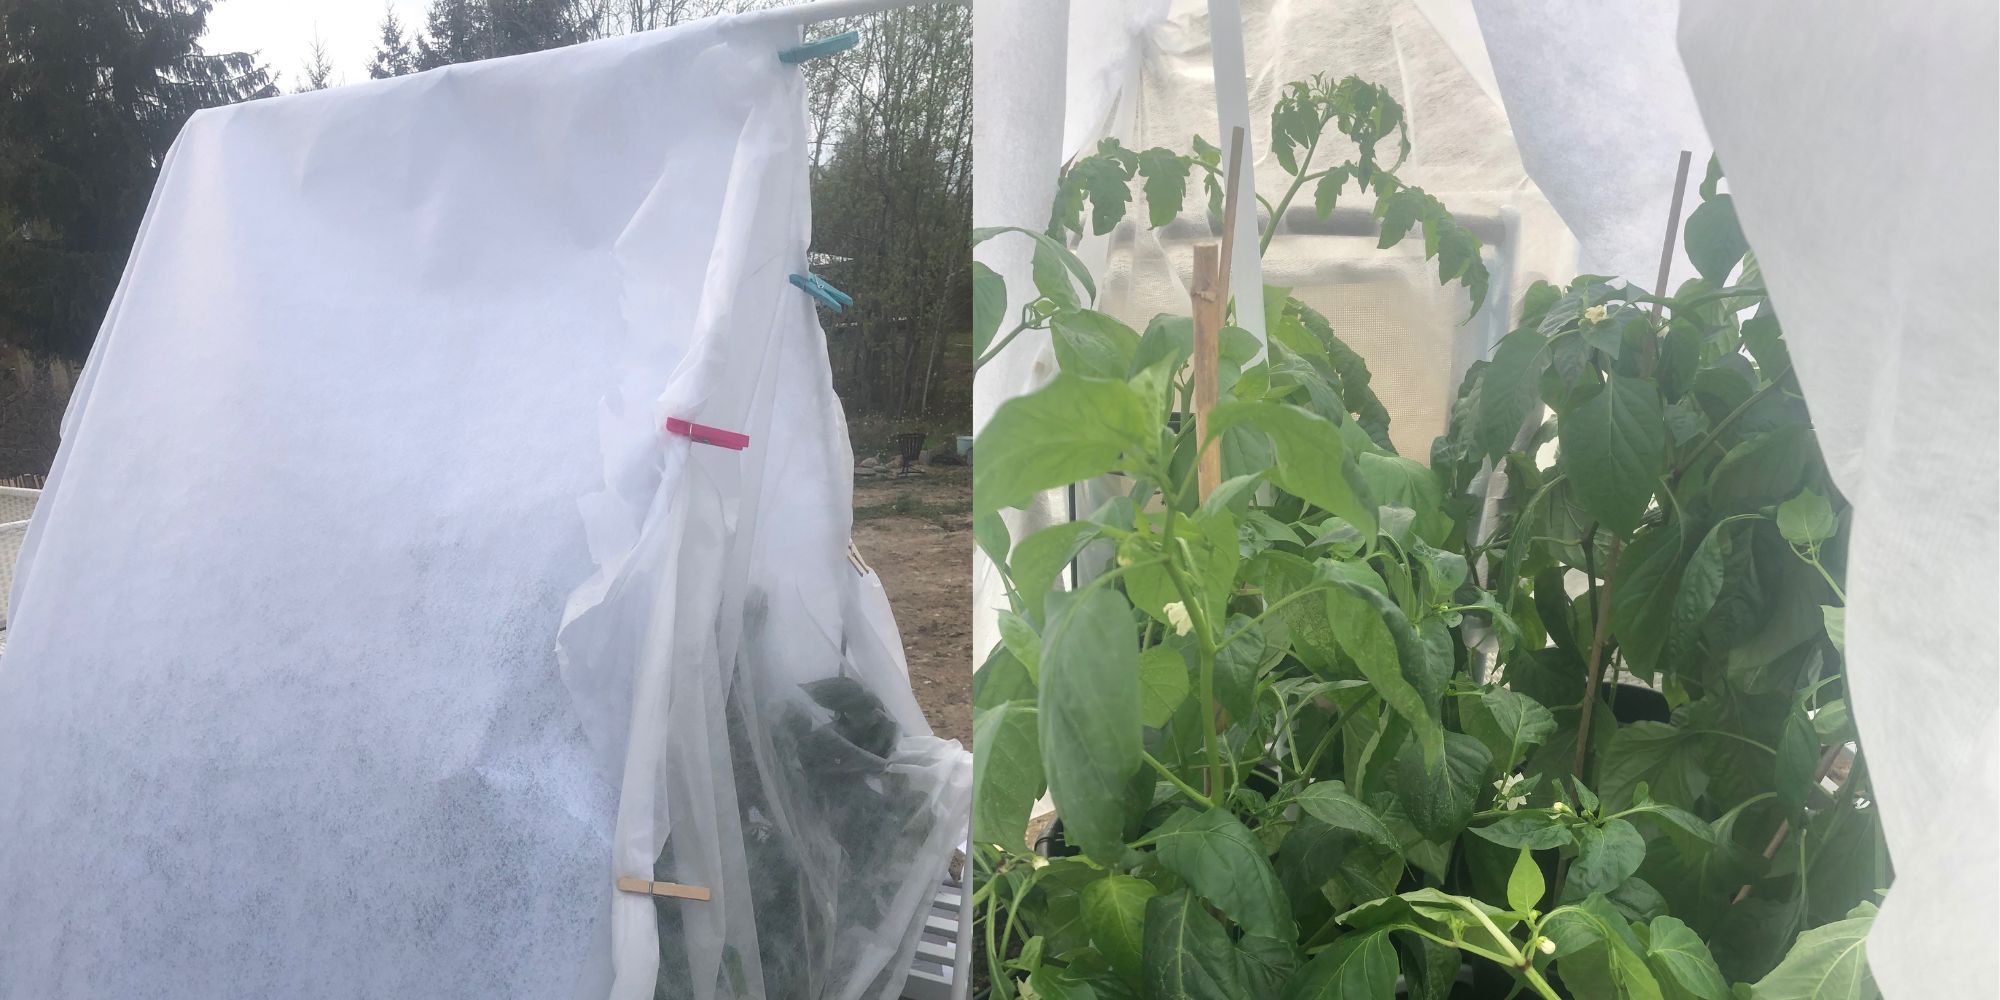 Avhärda tomatplantor i ett tält av fiberduk